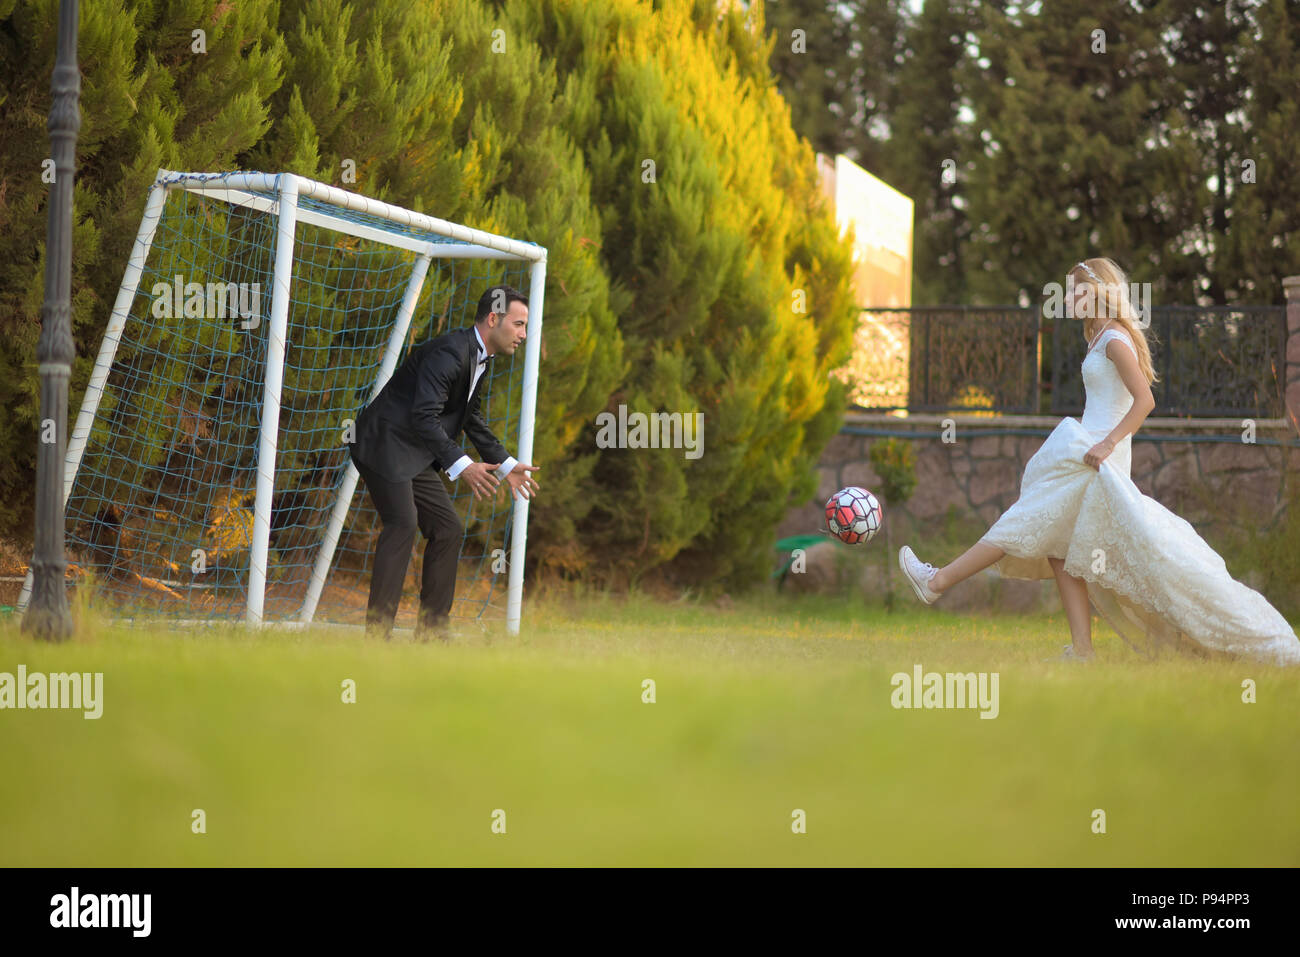 Hochzeit Braut und Bräutigam Fußball spielen Fussball Spiel Bräutigam Liebe  Ehe heiraten Paare Stockfotografie - Alamy